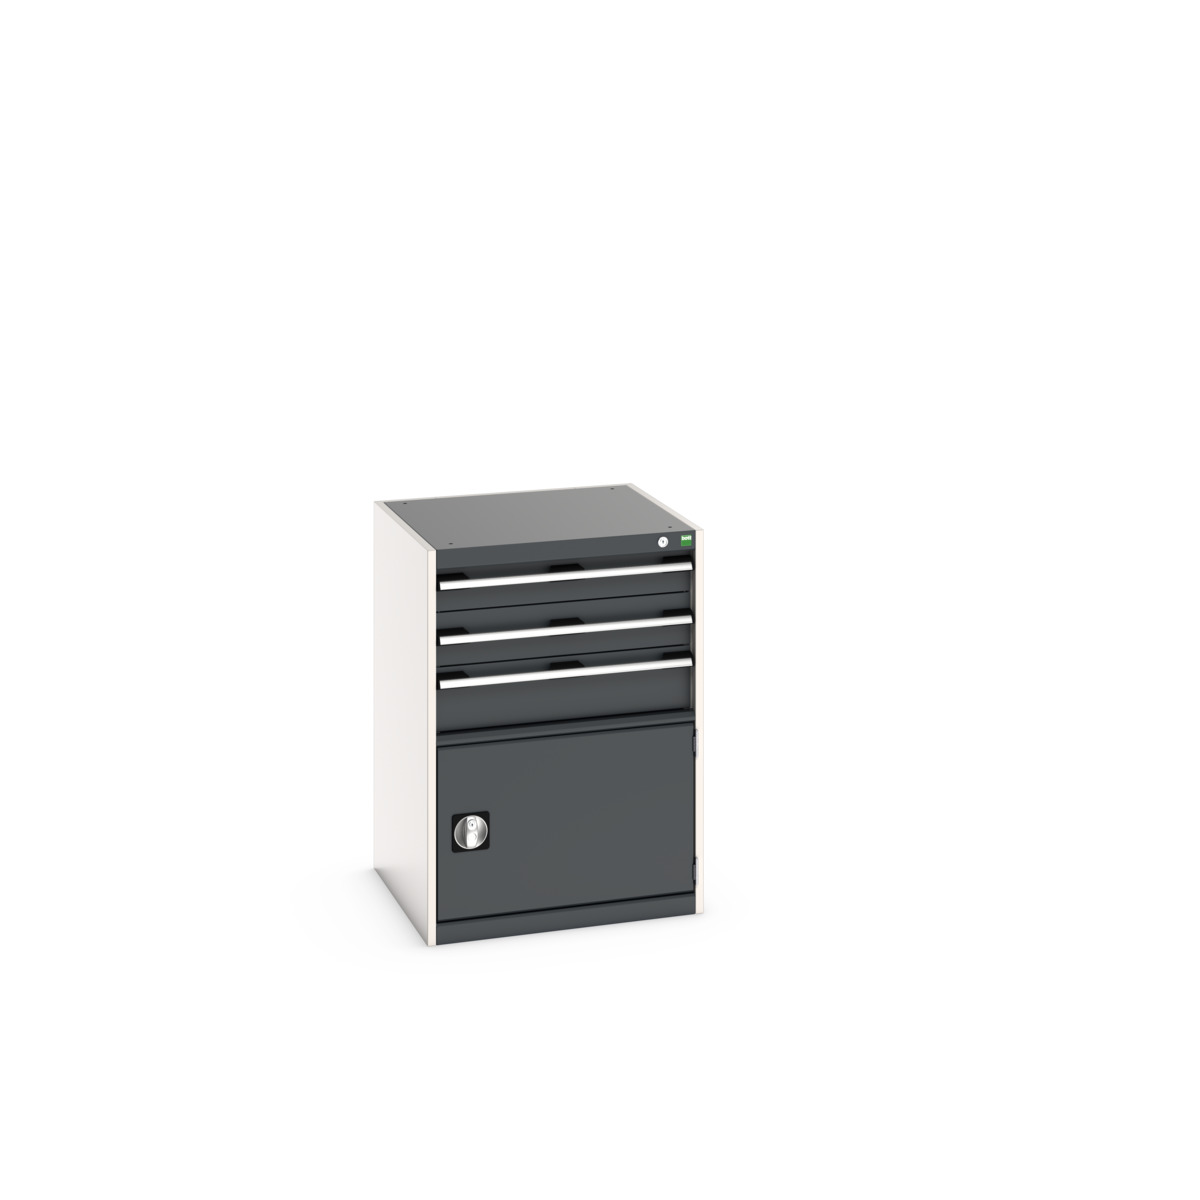 40019043. - cubio drawer-door cabinet